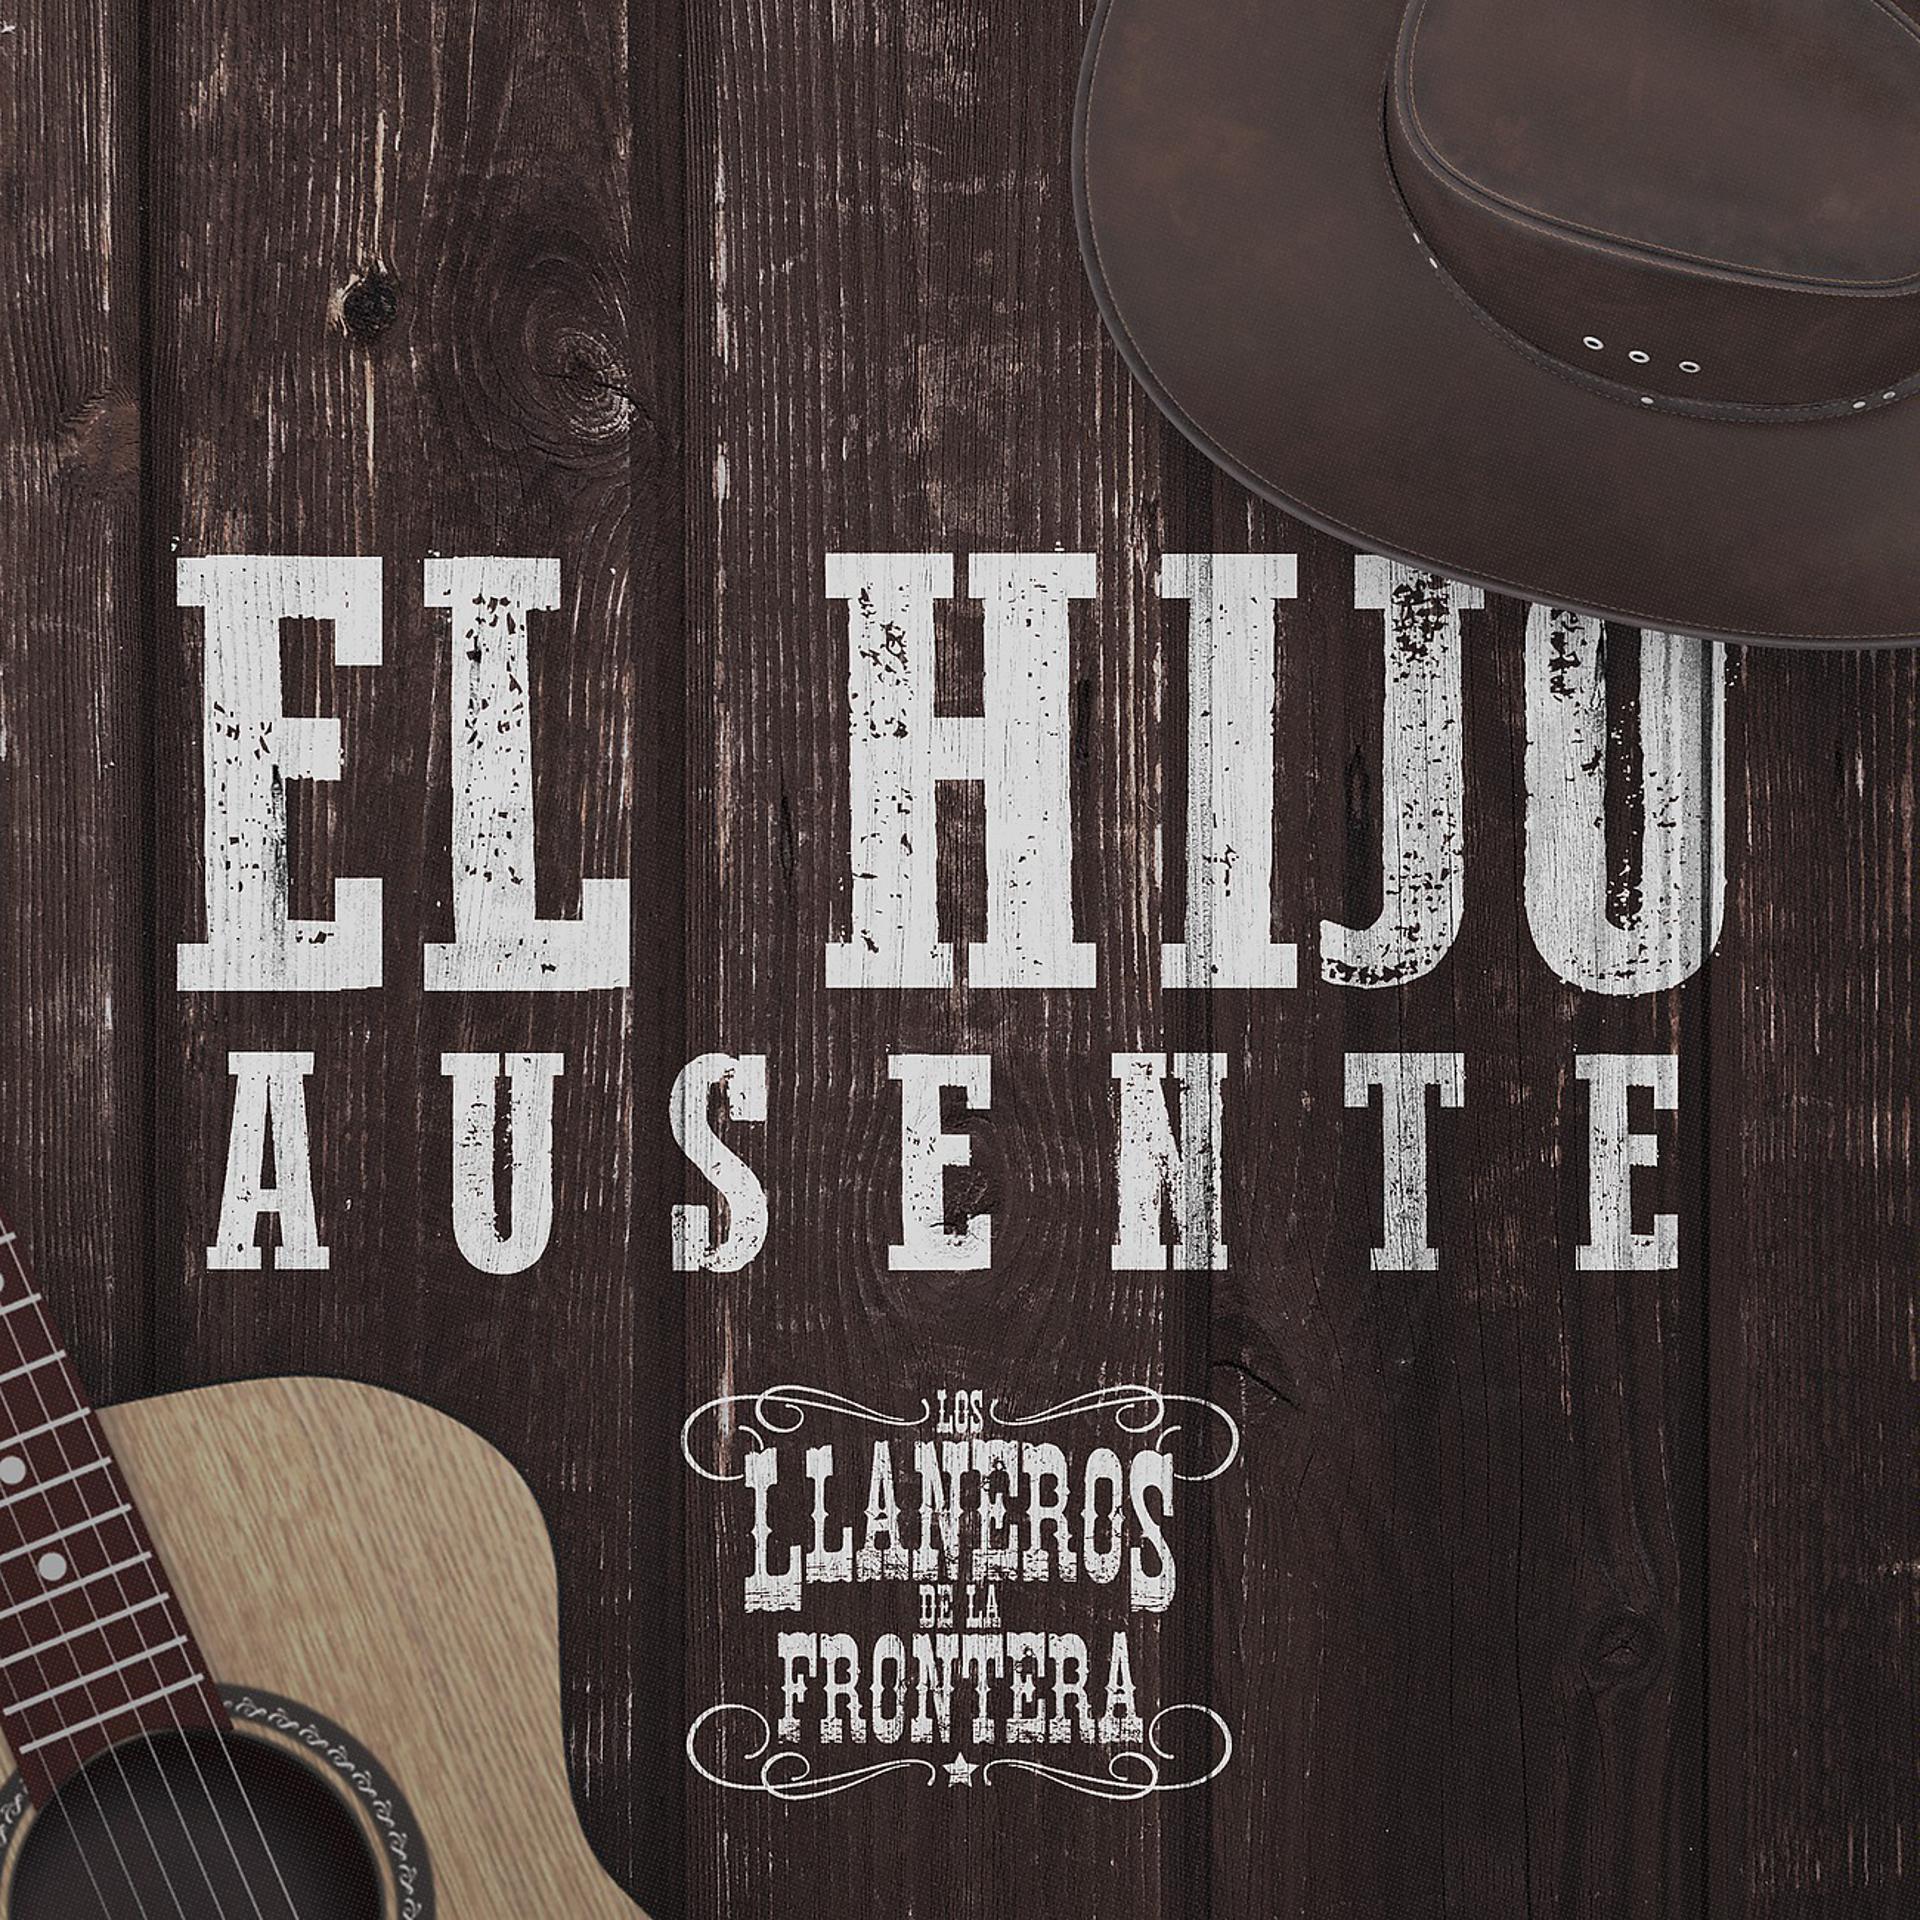 Постер альбома El Hijo Ausente